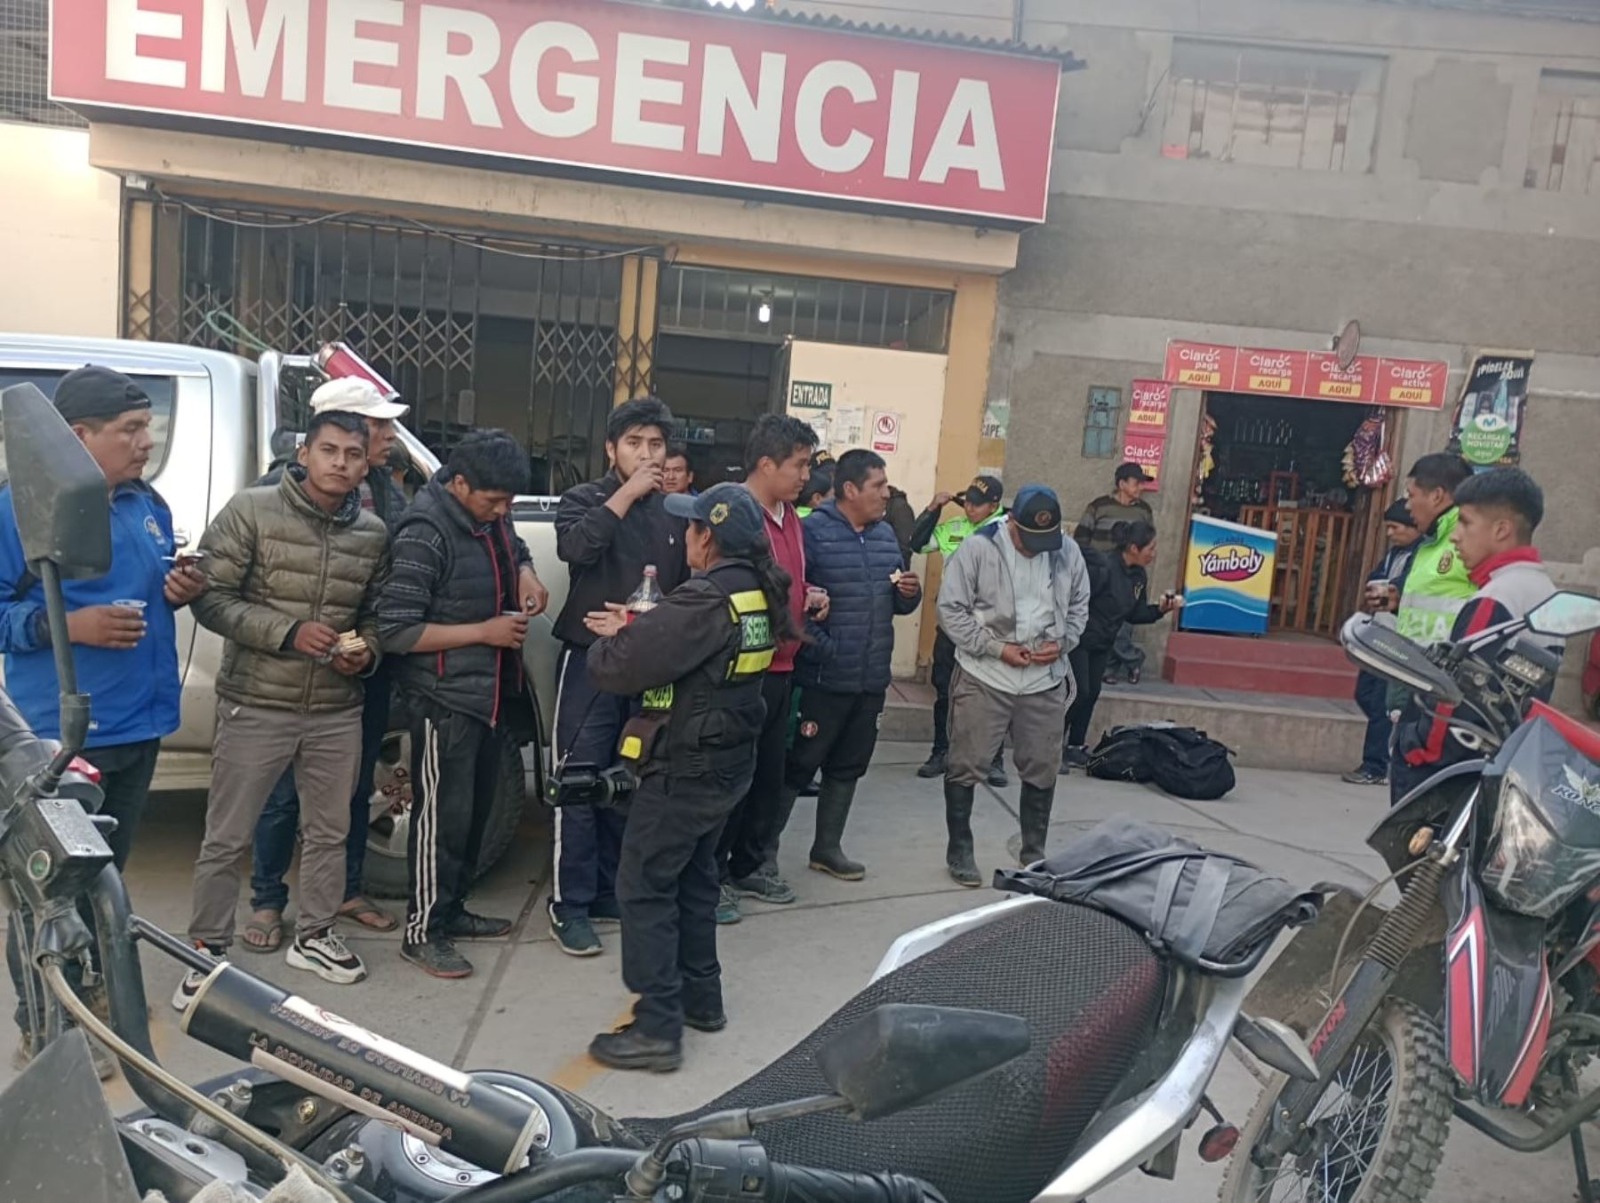 Miniván se precipita a abismo: 5 muertos y 5 heridos graves